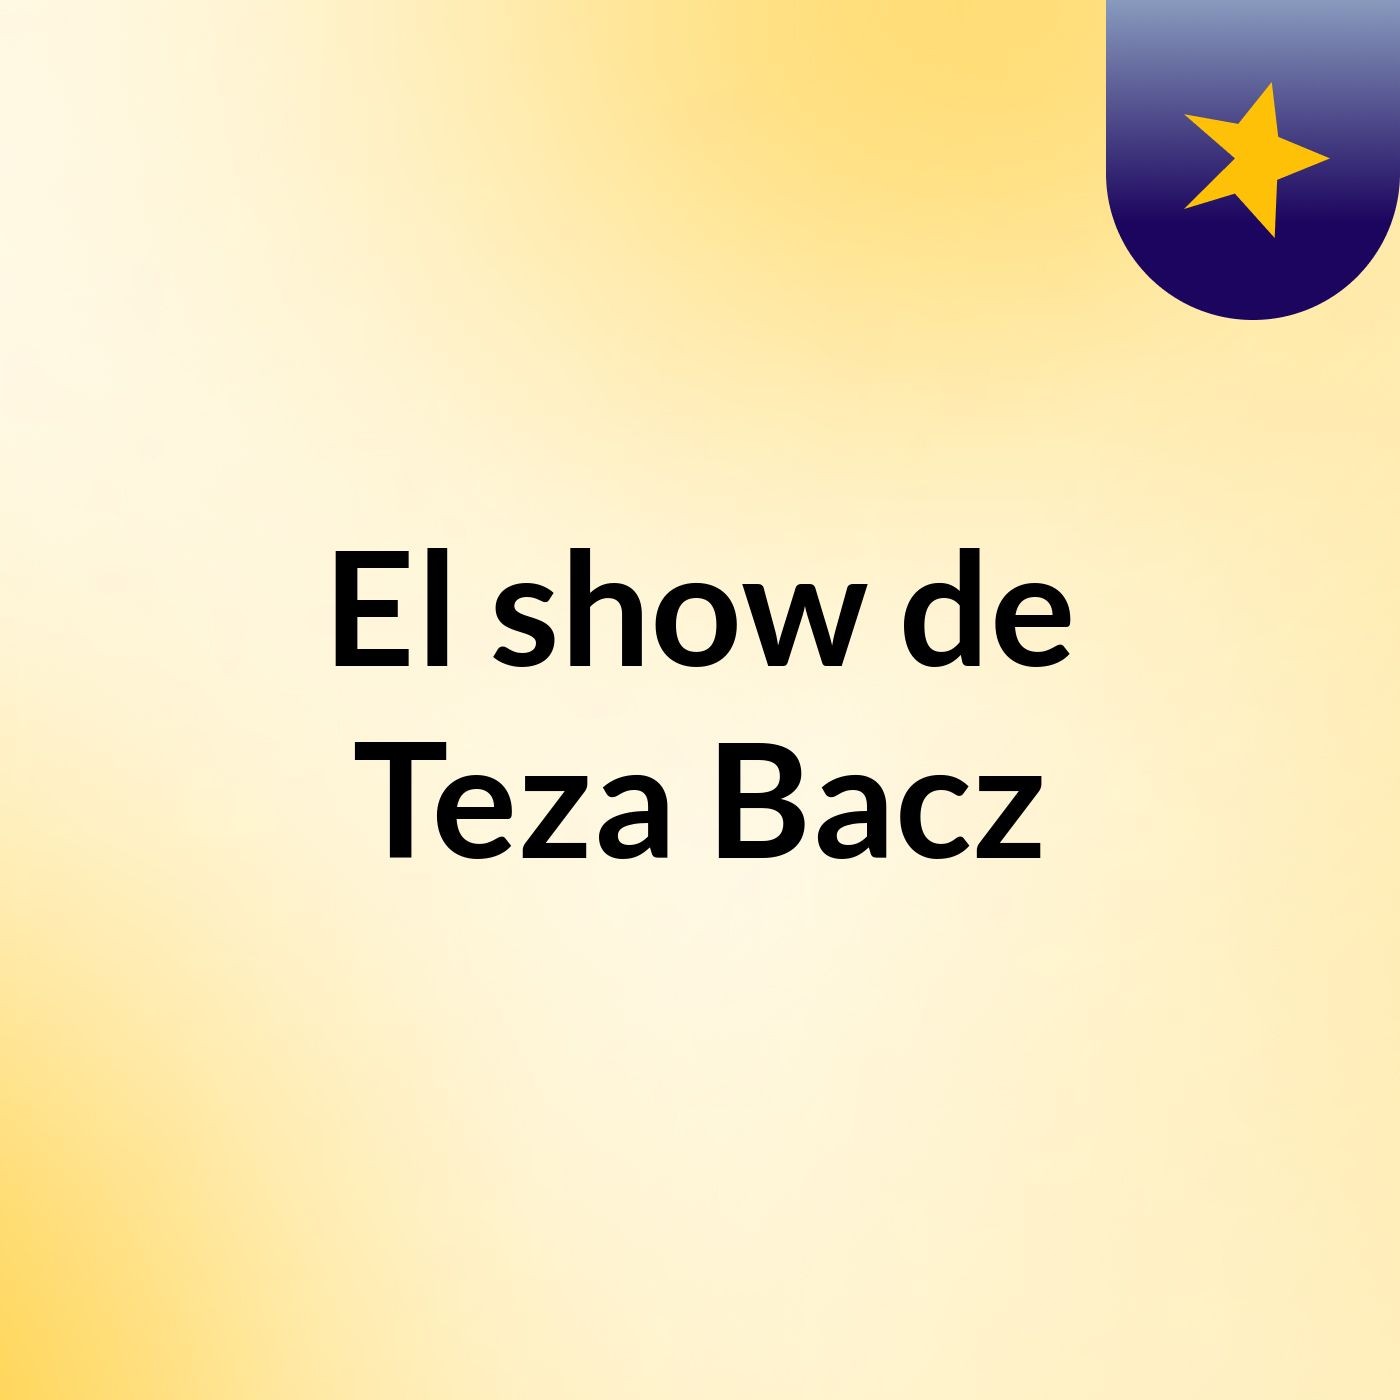 Episodio 6 - El show de Teza Bacz